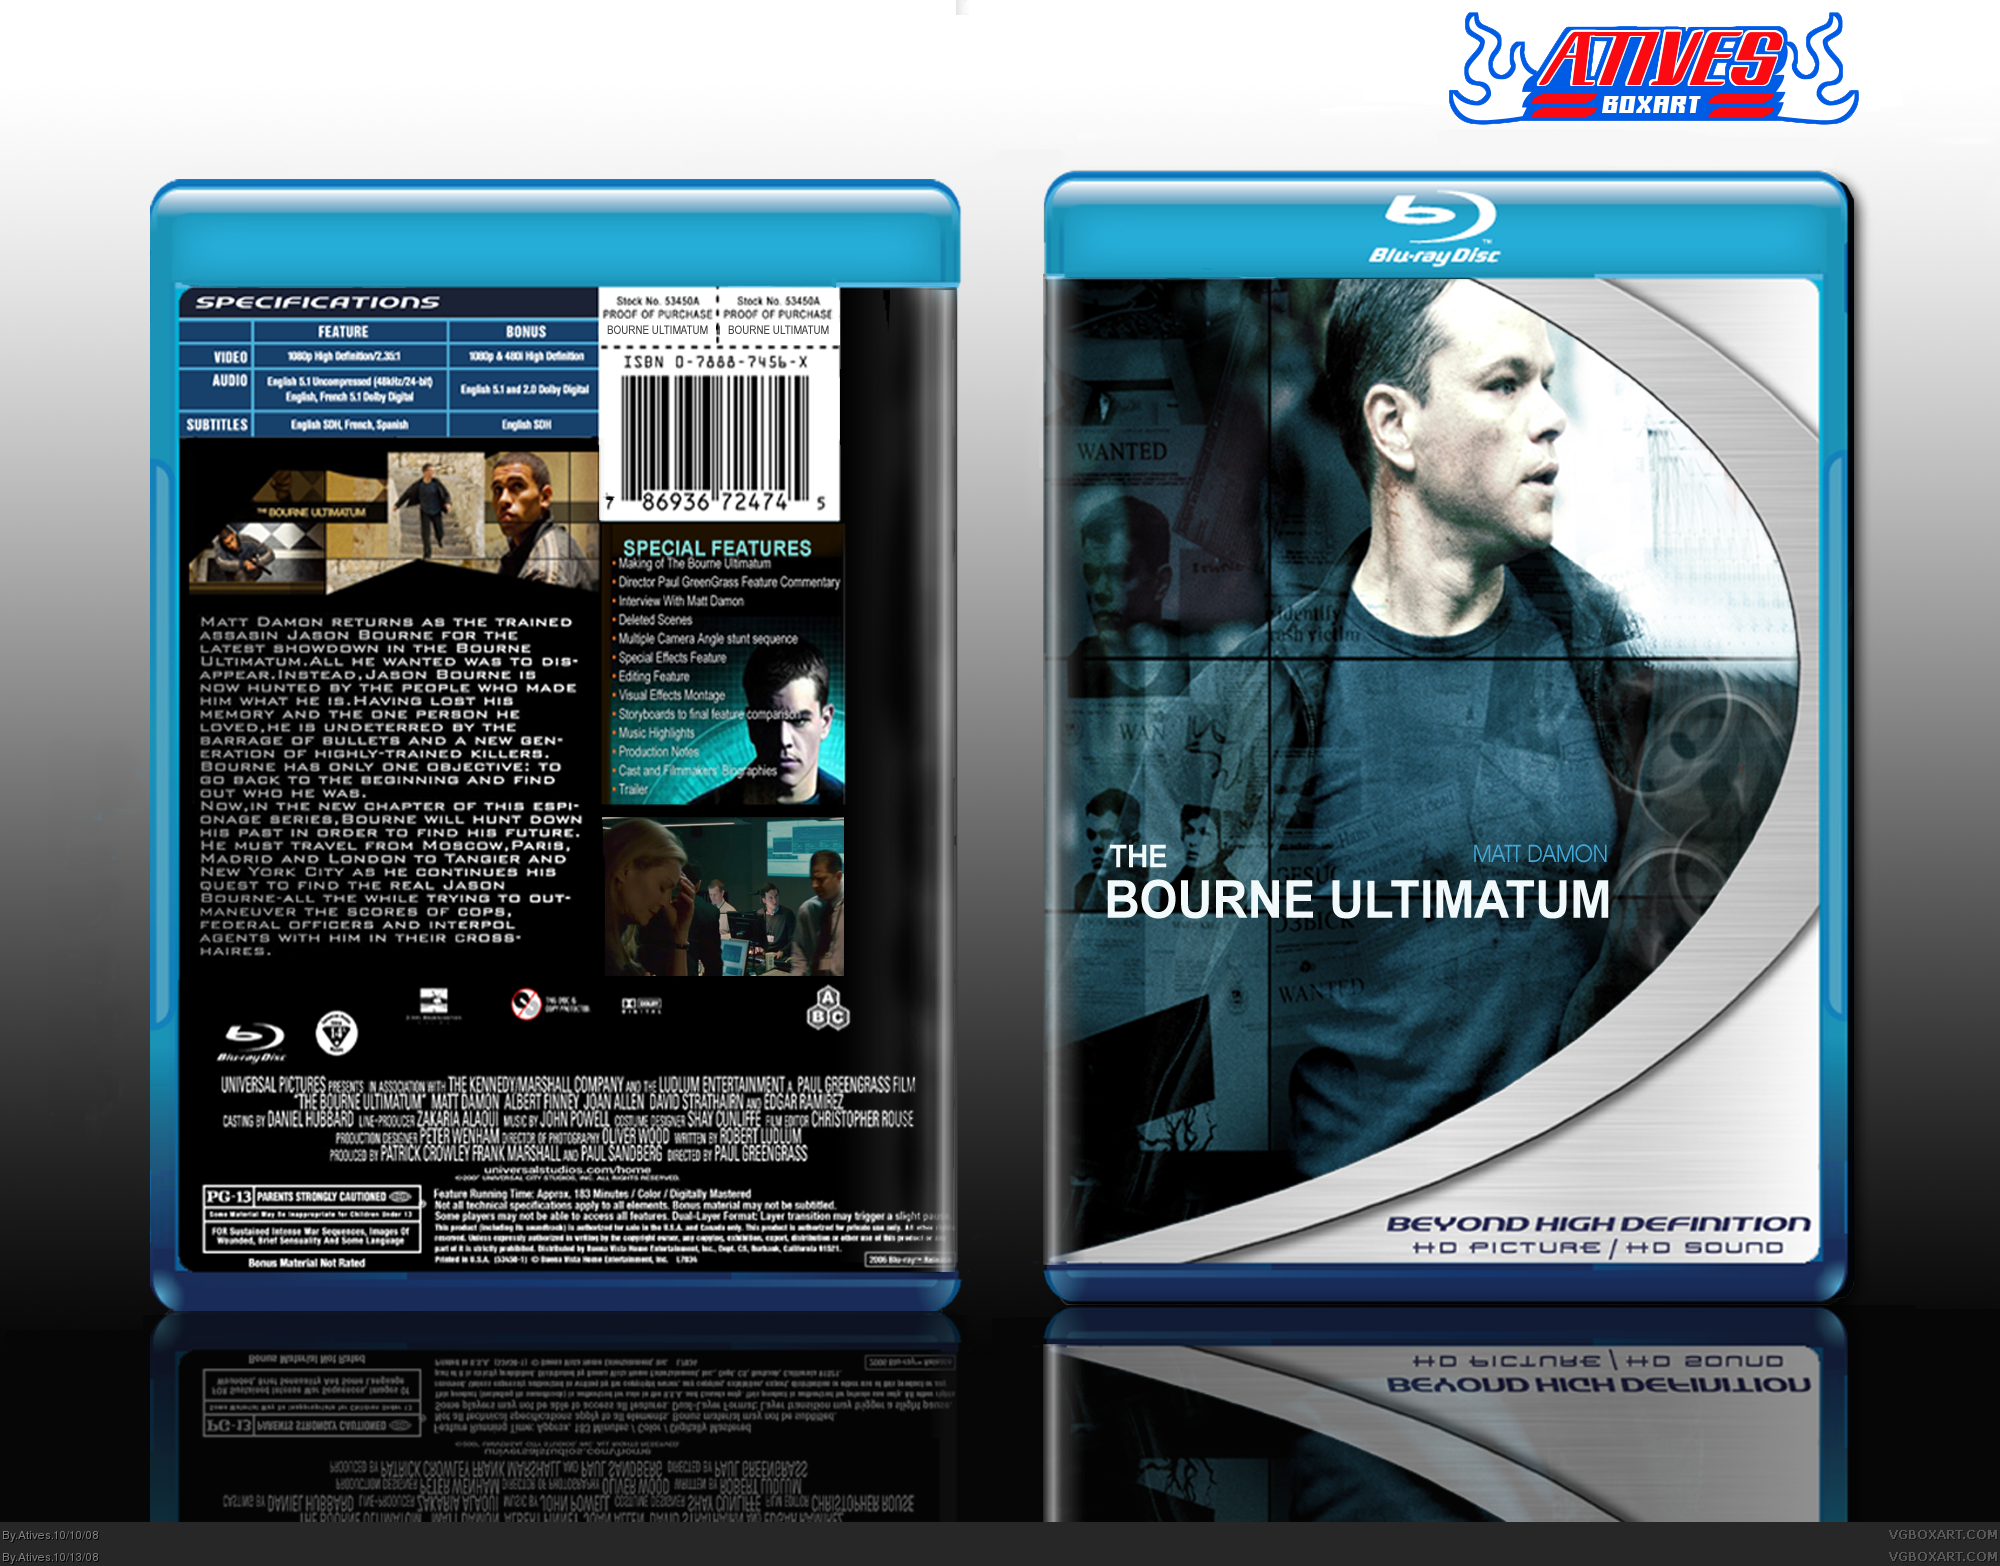 The Bourne Ultimatum box cover